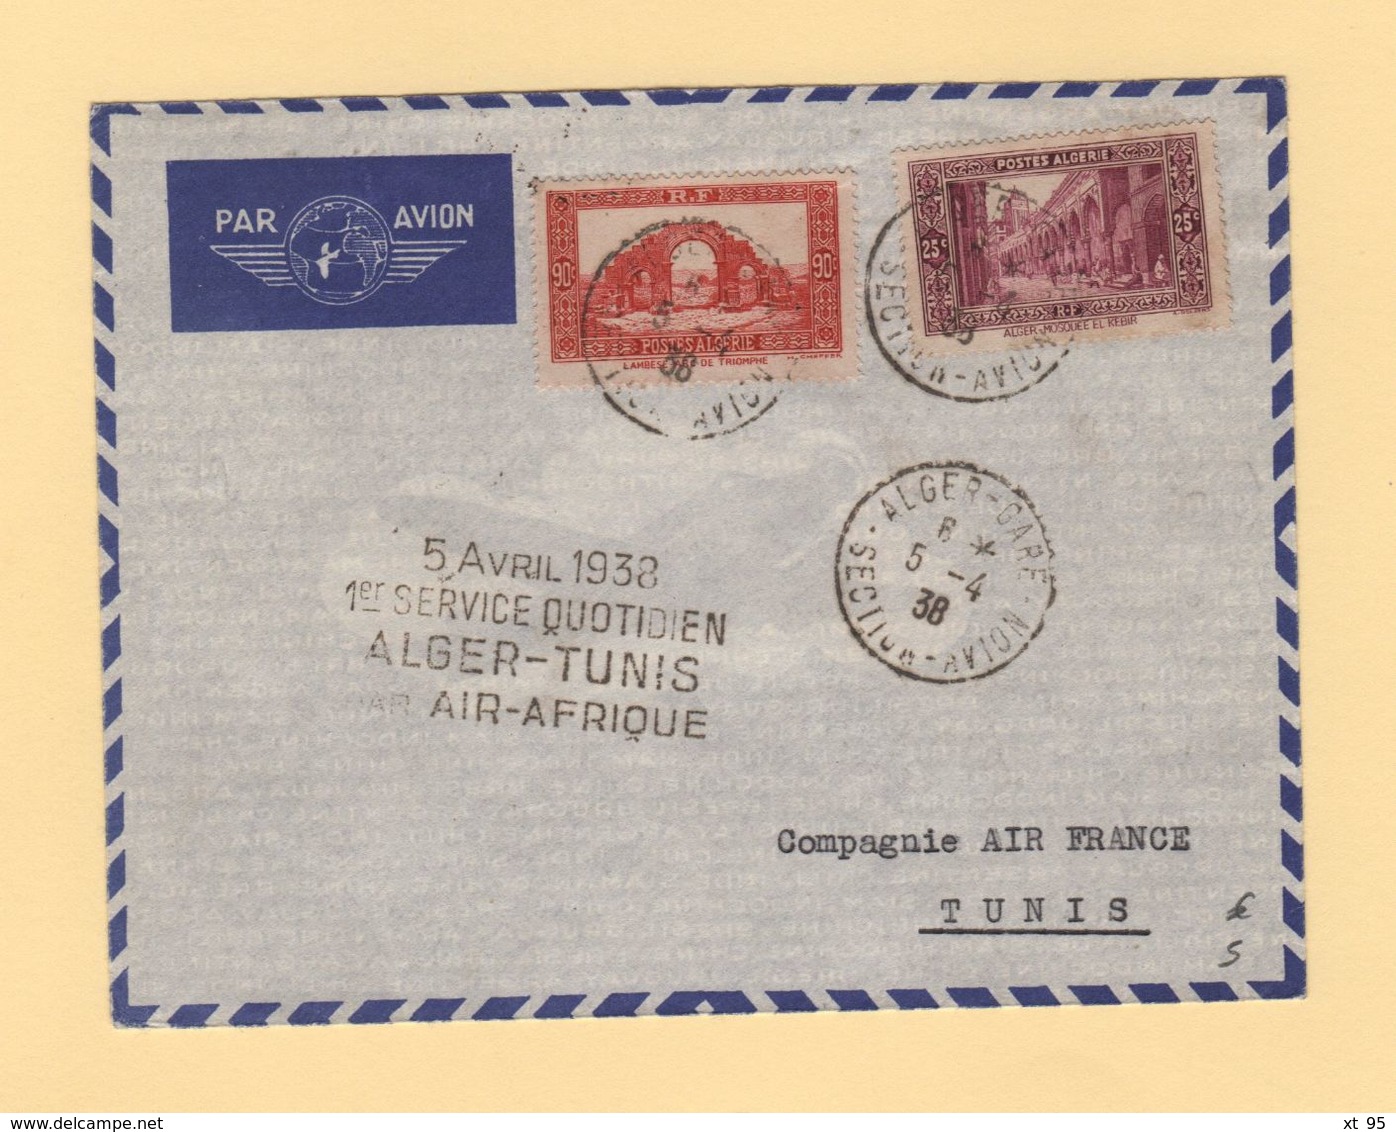 Algerie - 1er Service Quotidien Alger Tunis Par Air Afrique - 5-4-1938 - Posta Aerea